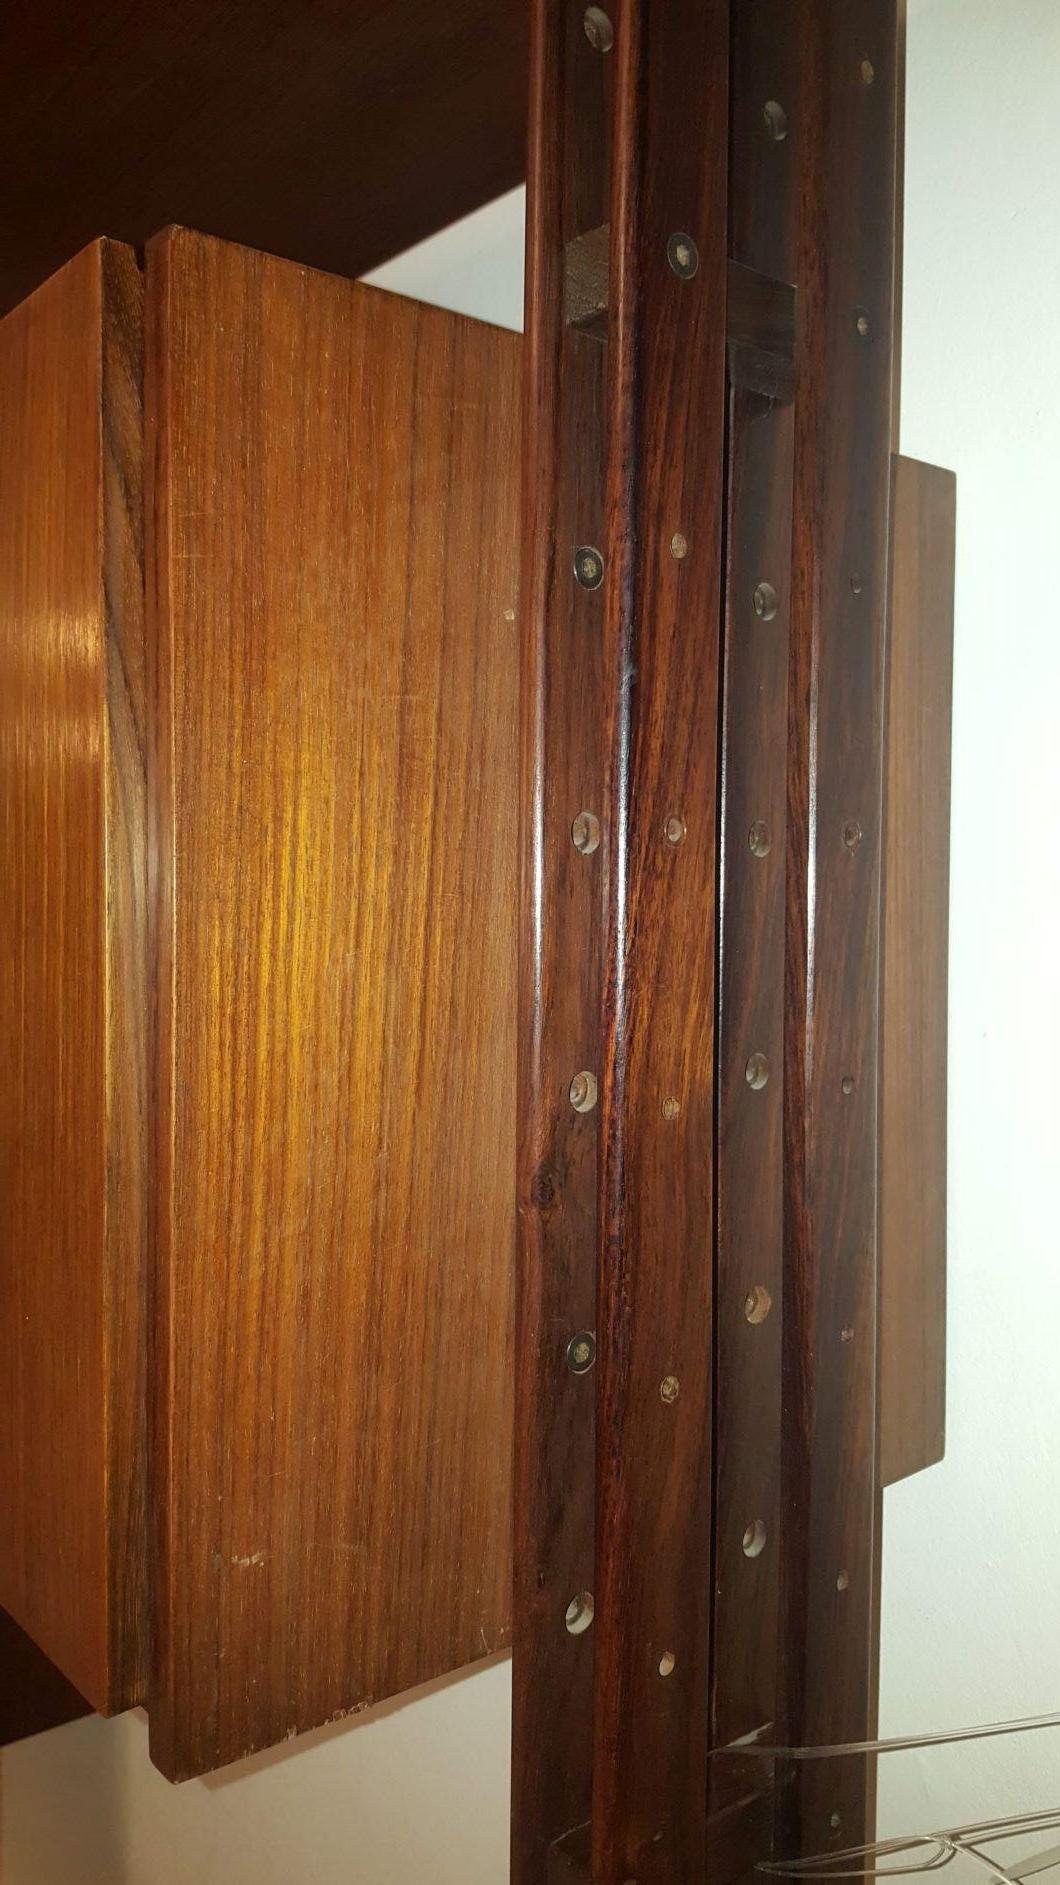 Aluminum Franco Albini Midcentury Bookcase Wood LB7 Designed for Poggi in 1957, Italia